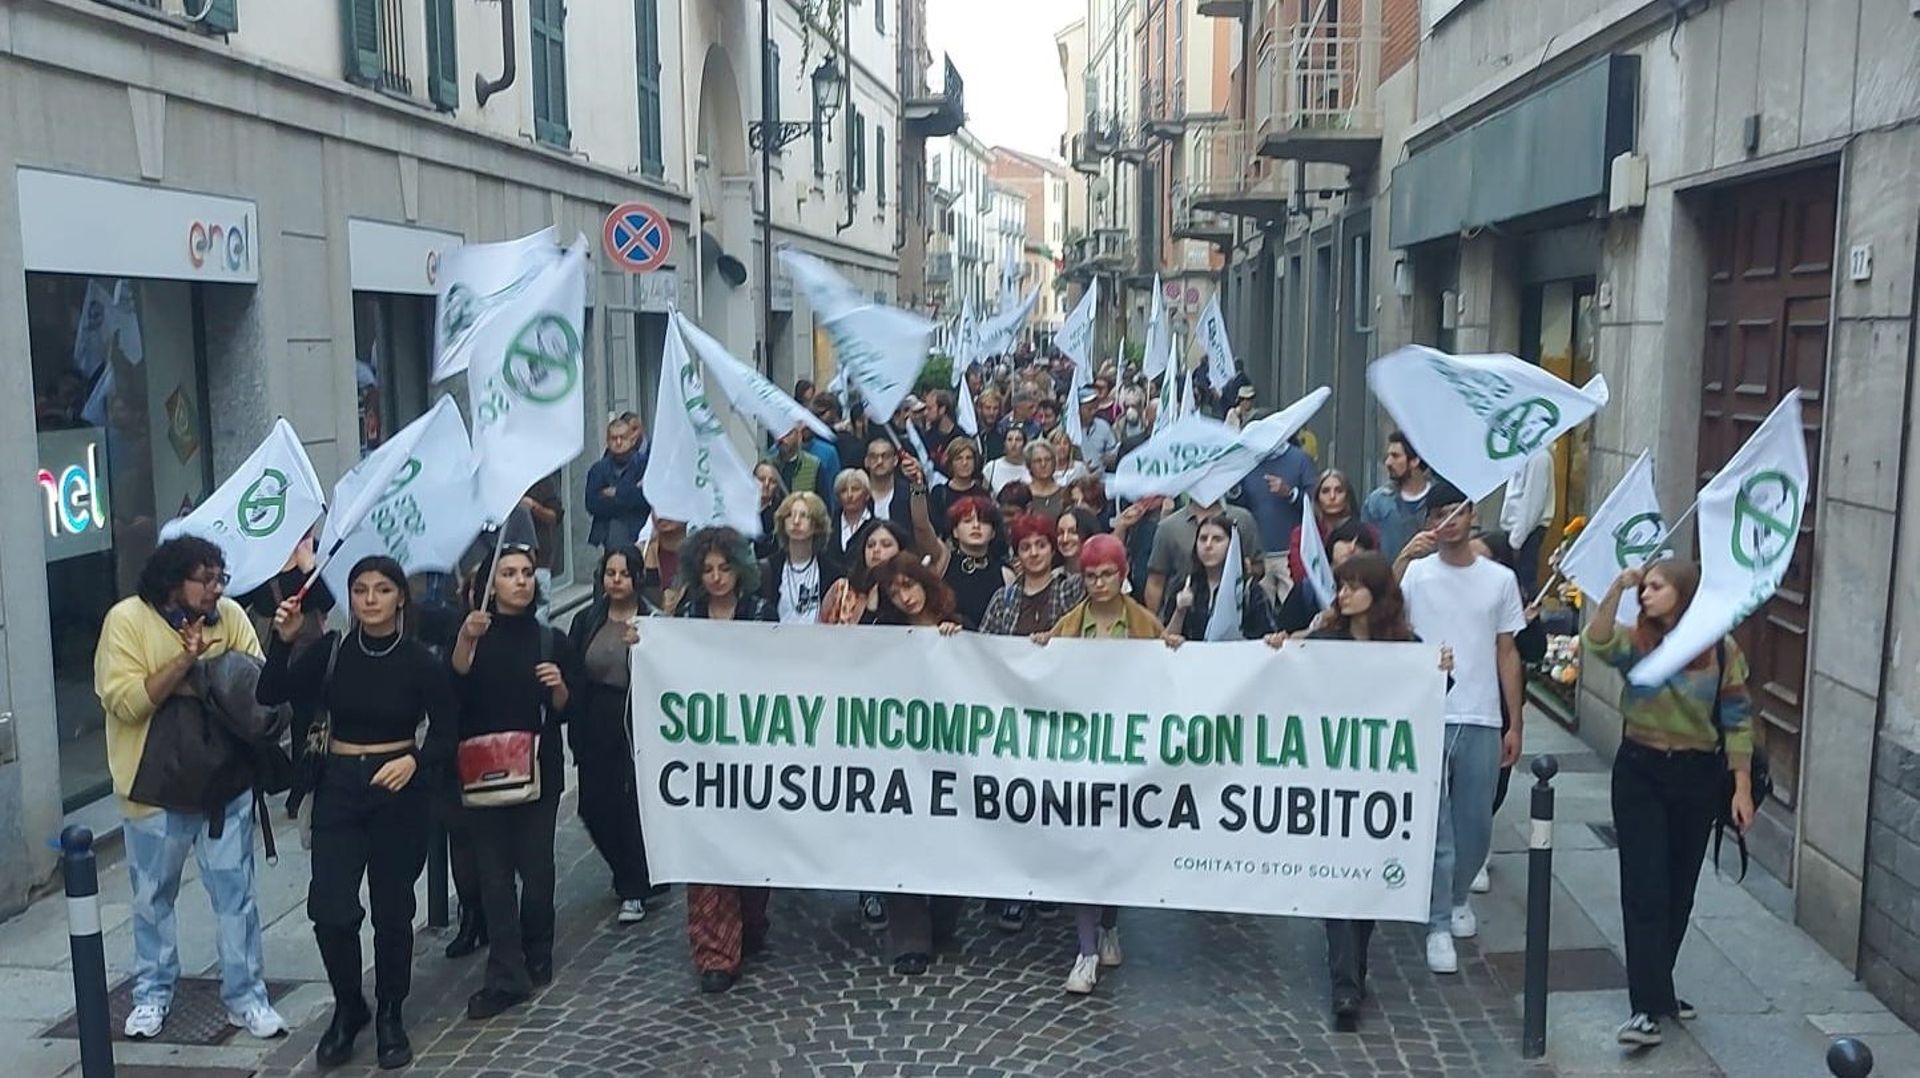 Manifestation du Comitato Stop Solvay dans la ville d’Alessandria le 15 octobre 2022.